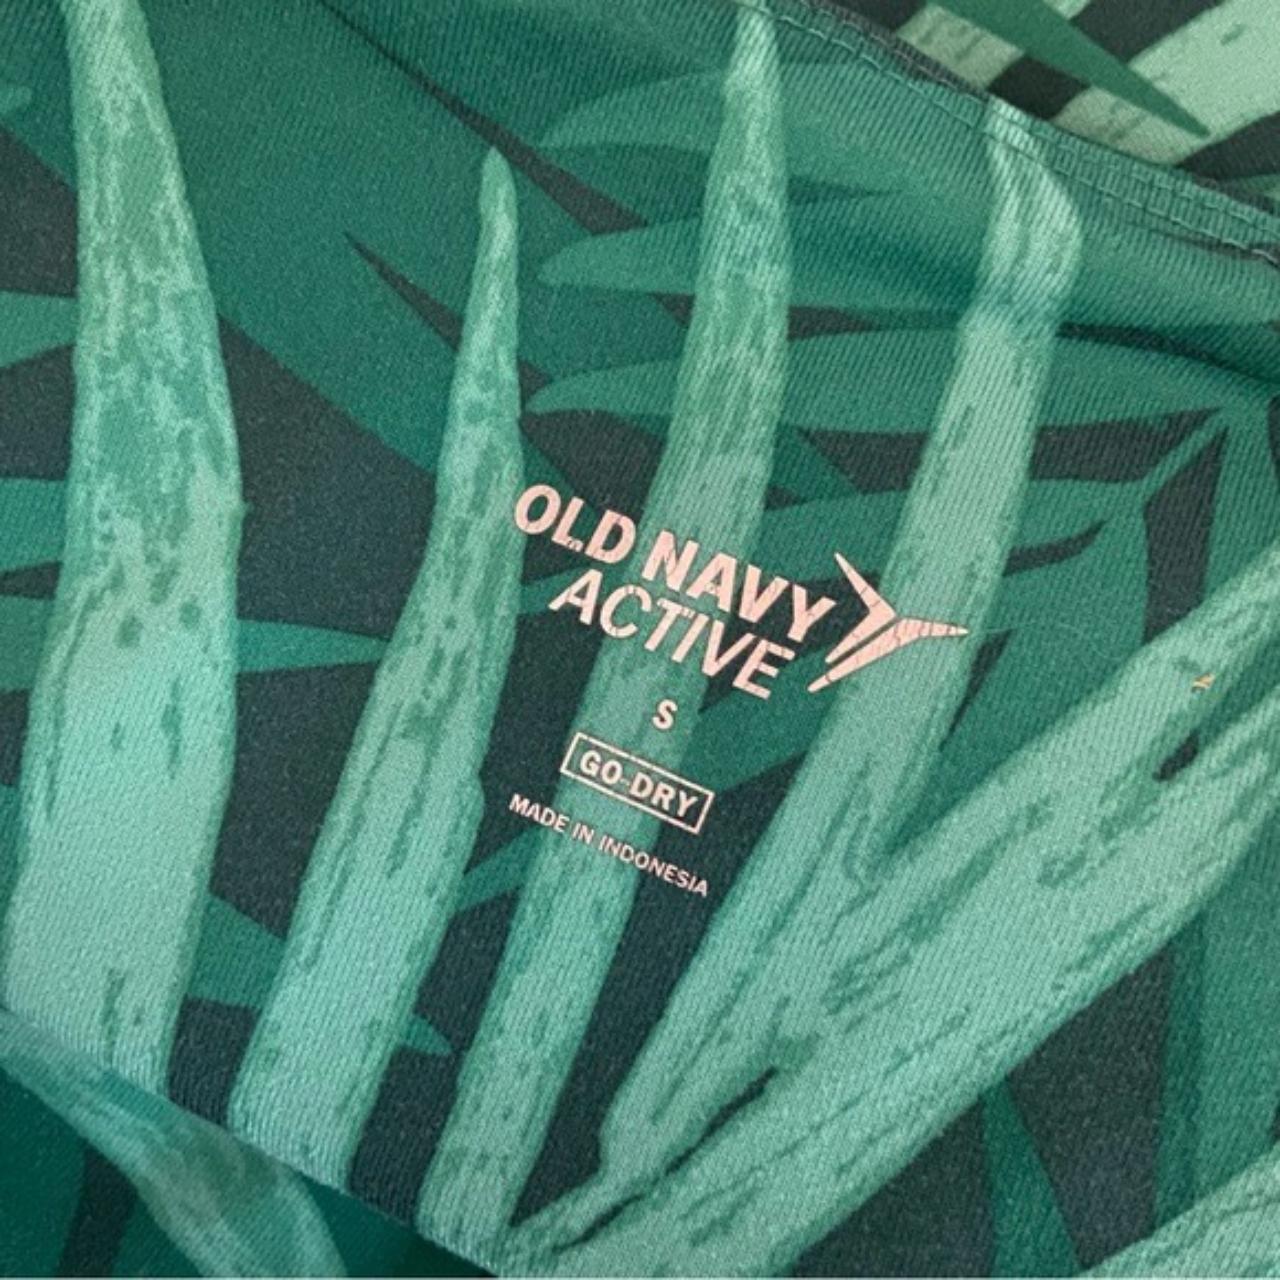 Old Navy active brand go-dry capri length legging - Depop